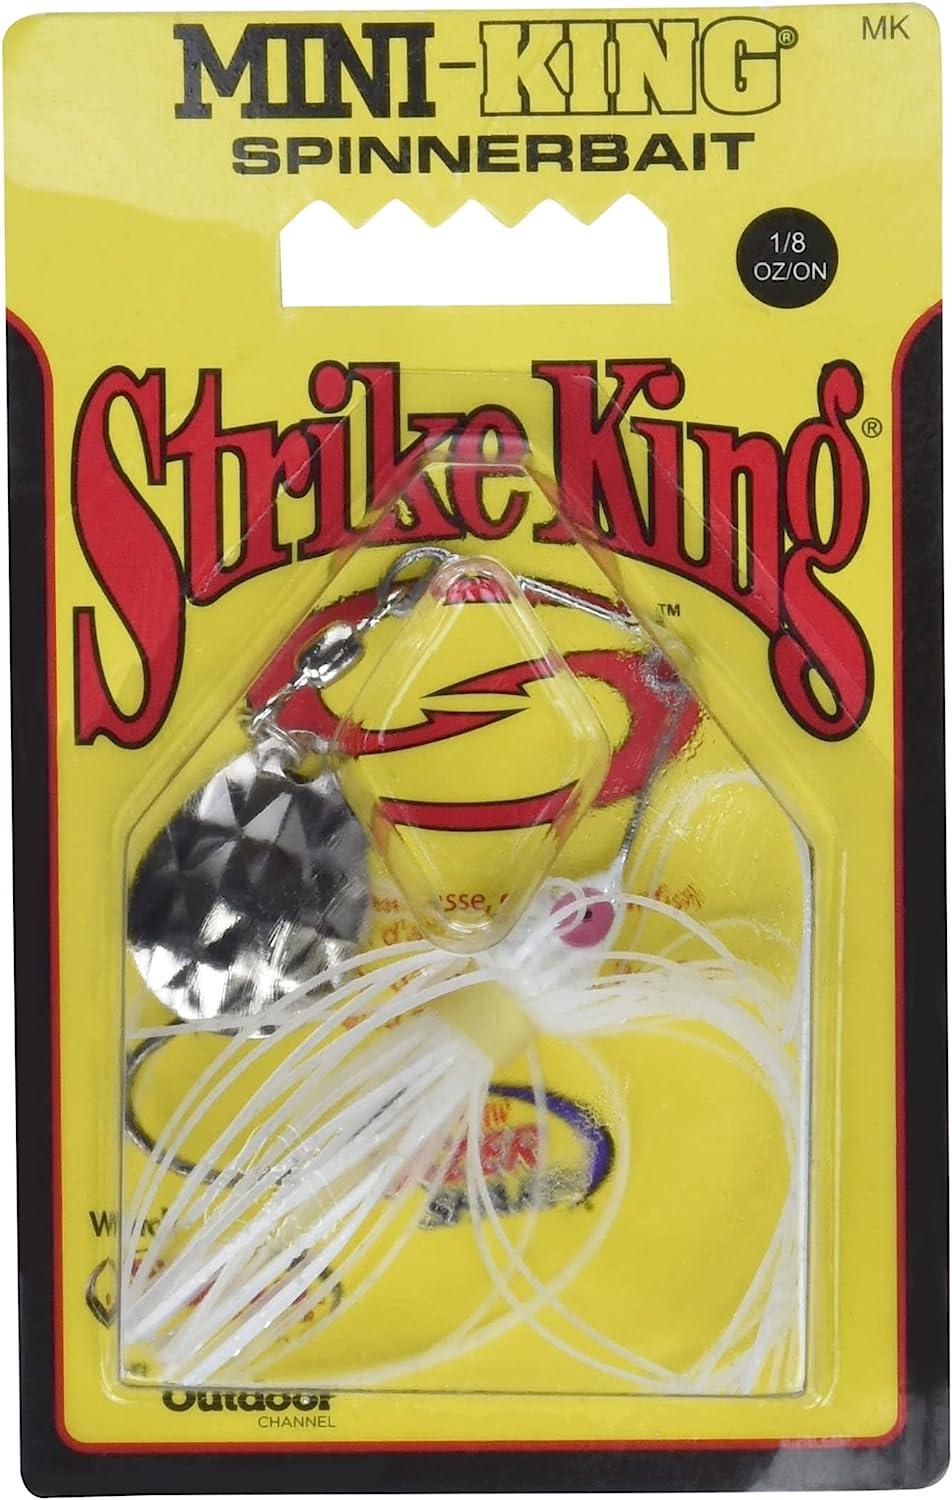 Strike King Red Eyed Mini-King Spinnerbait 1/8 oz